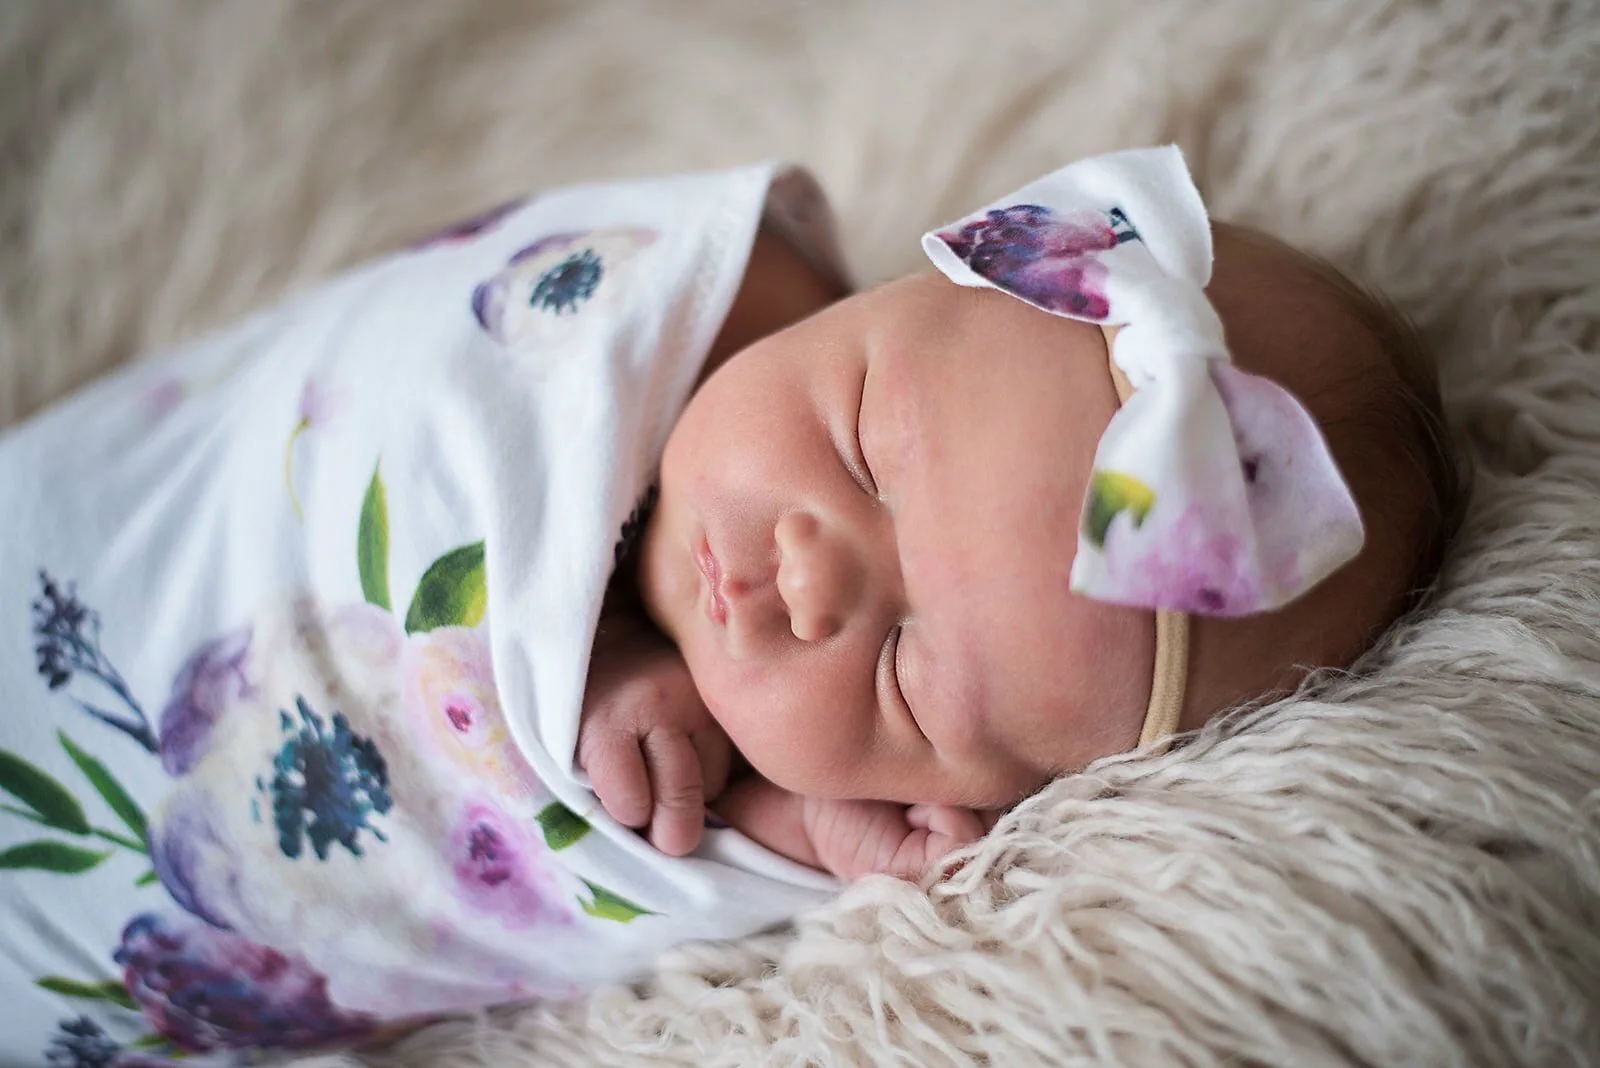 Пеленка для новорожденных с рисунком; пеленка для сна для новорожденных мальчиков и девочек; муслиновая накидка+ повязка на голову; 2 шт